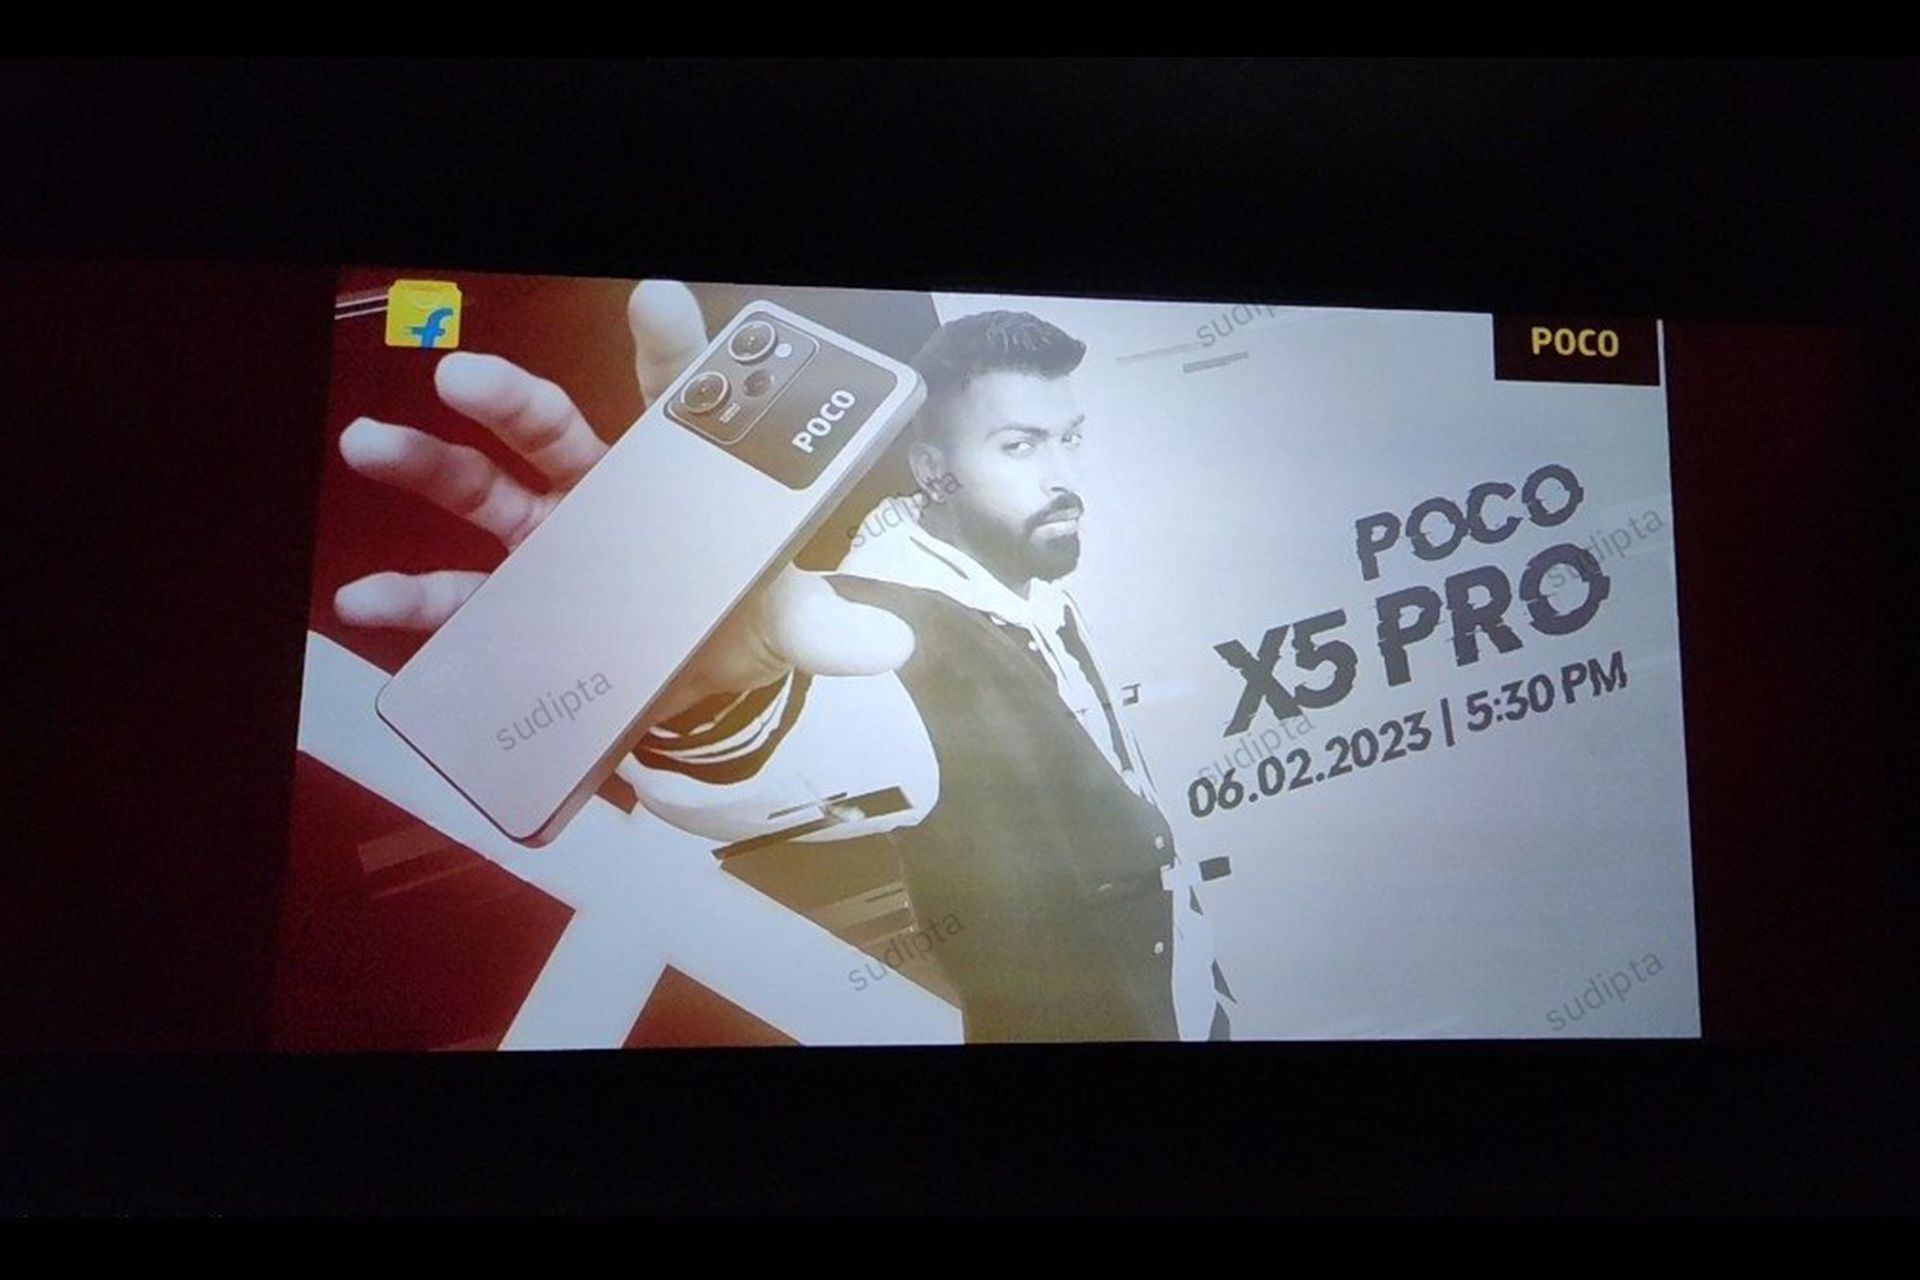 تصویر گوشی جدید پوکو X5 Pro 5G در پوستری که در فیلم هالیوودی دیده می شود 